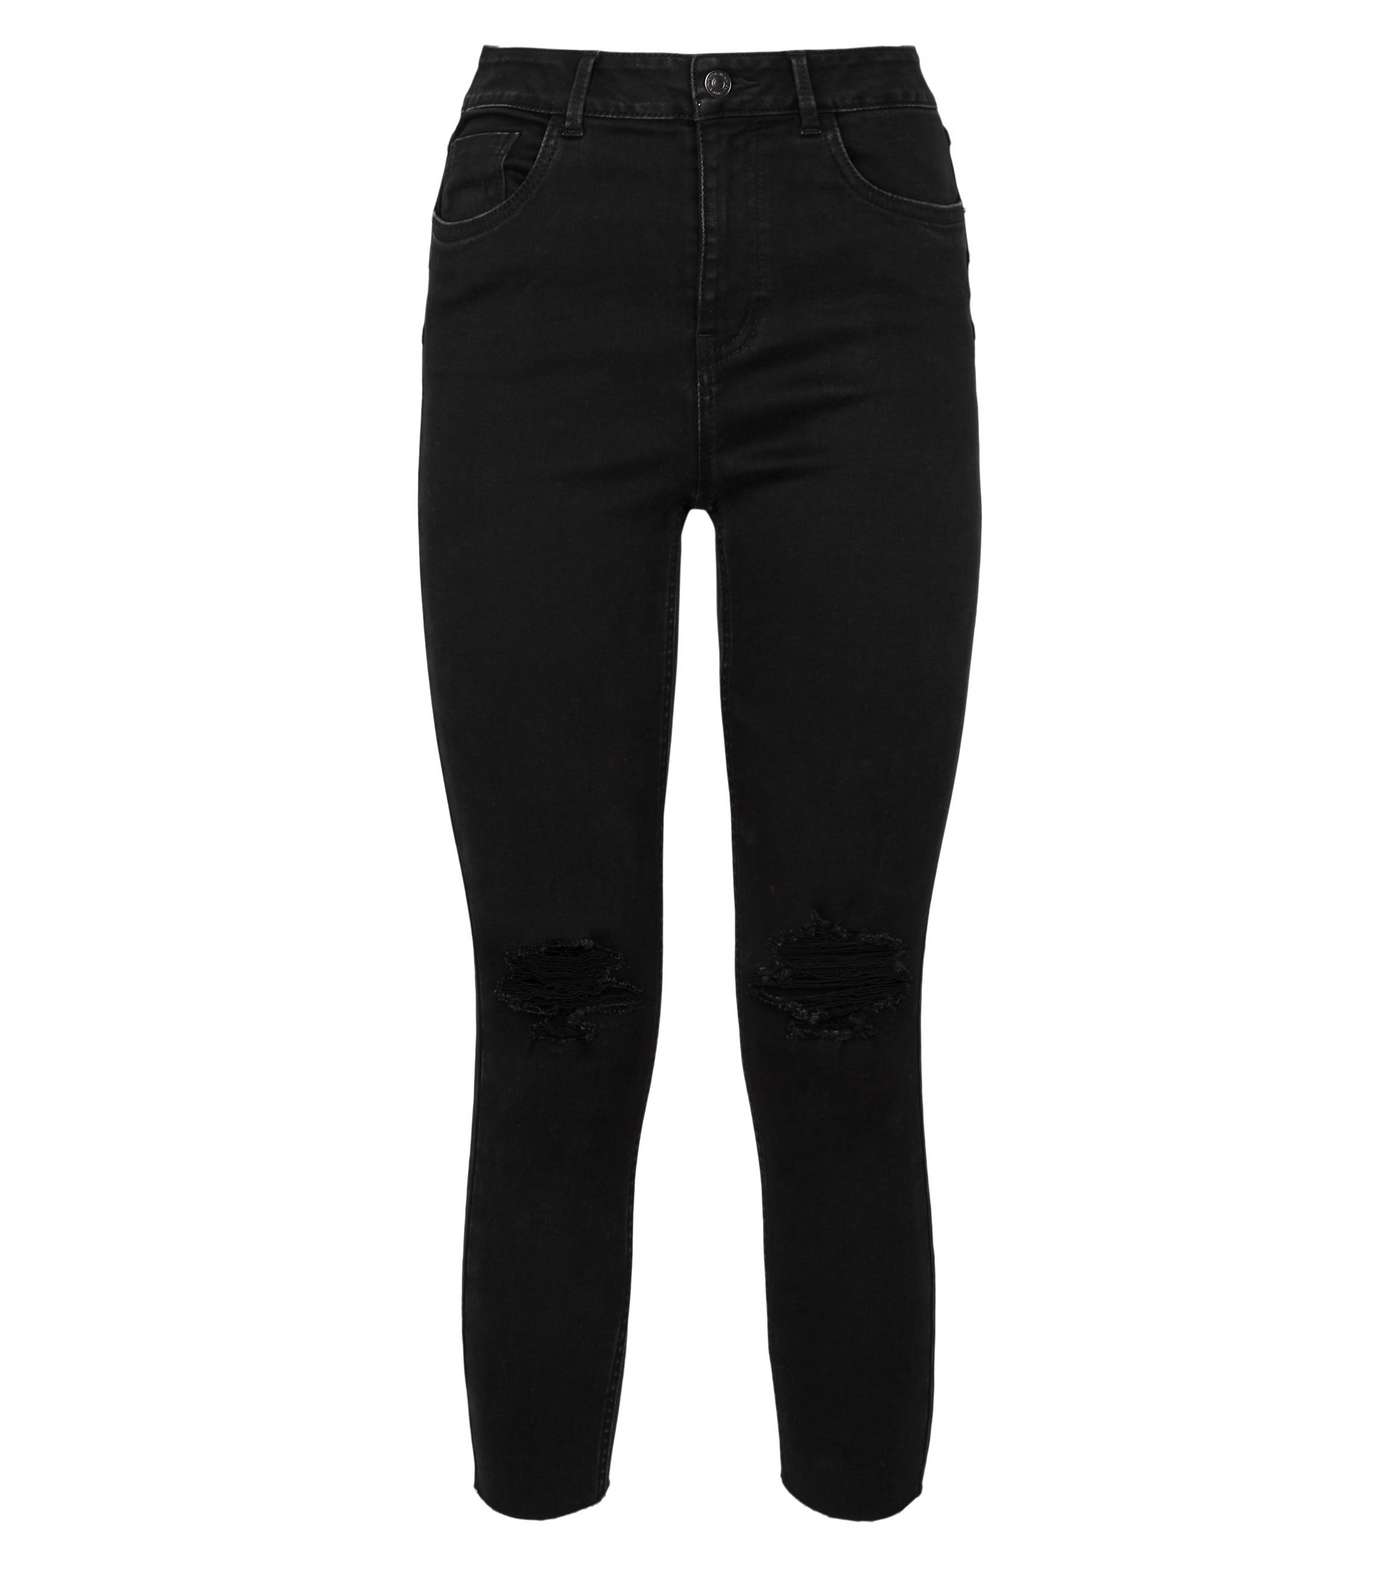 Petite Black 'Lift & Shape' Ripped Jenna Skinny Jeans Image 5